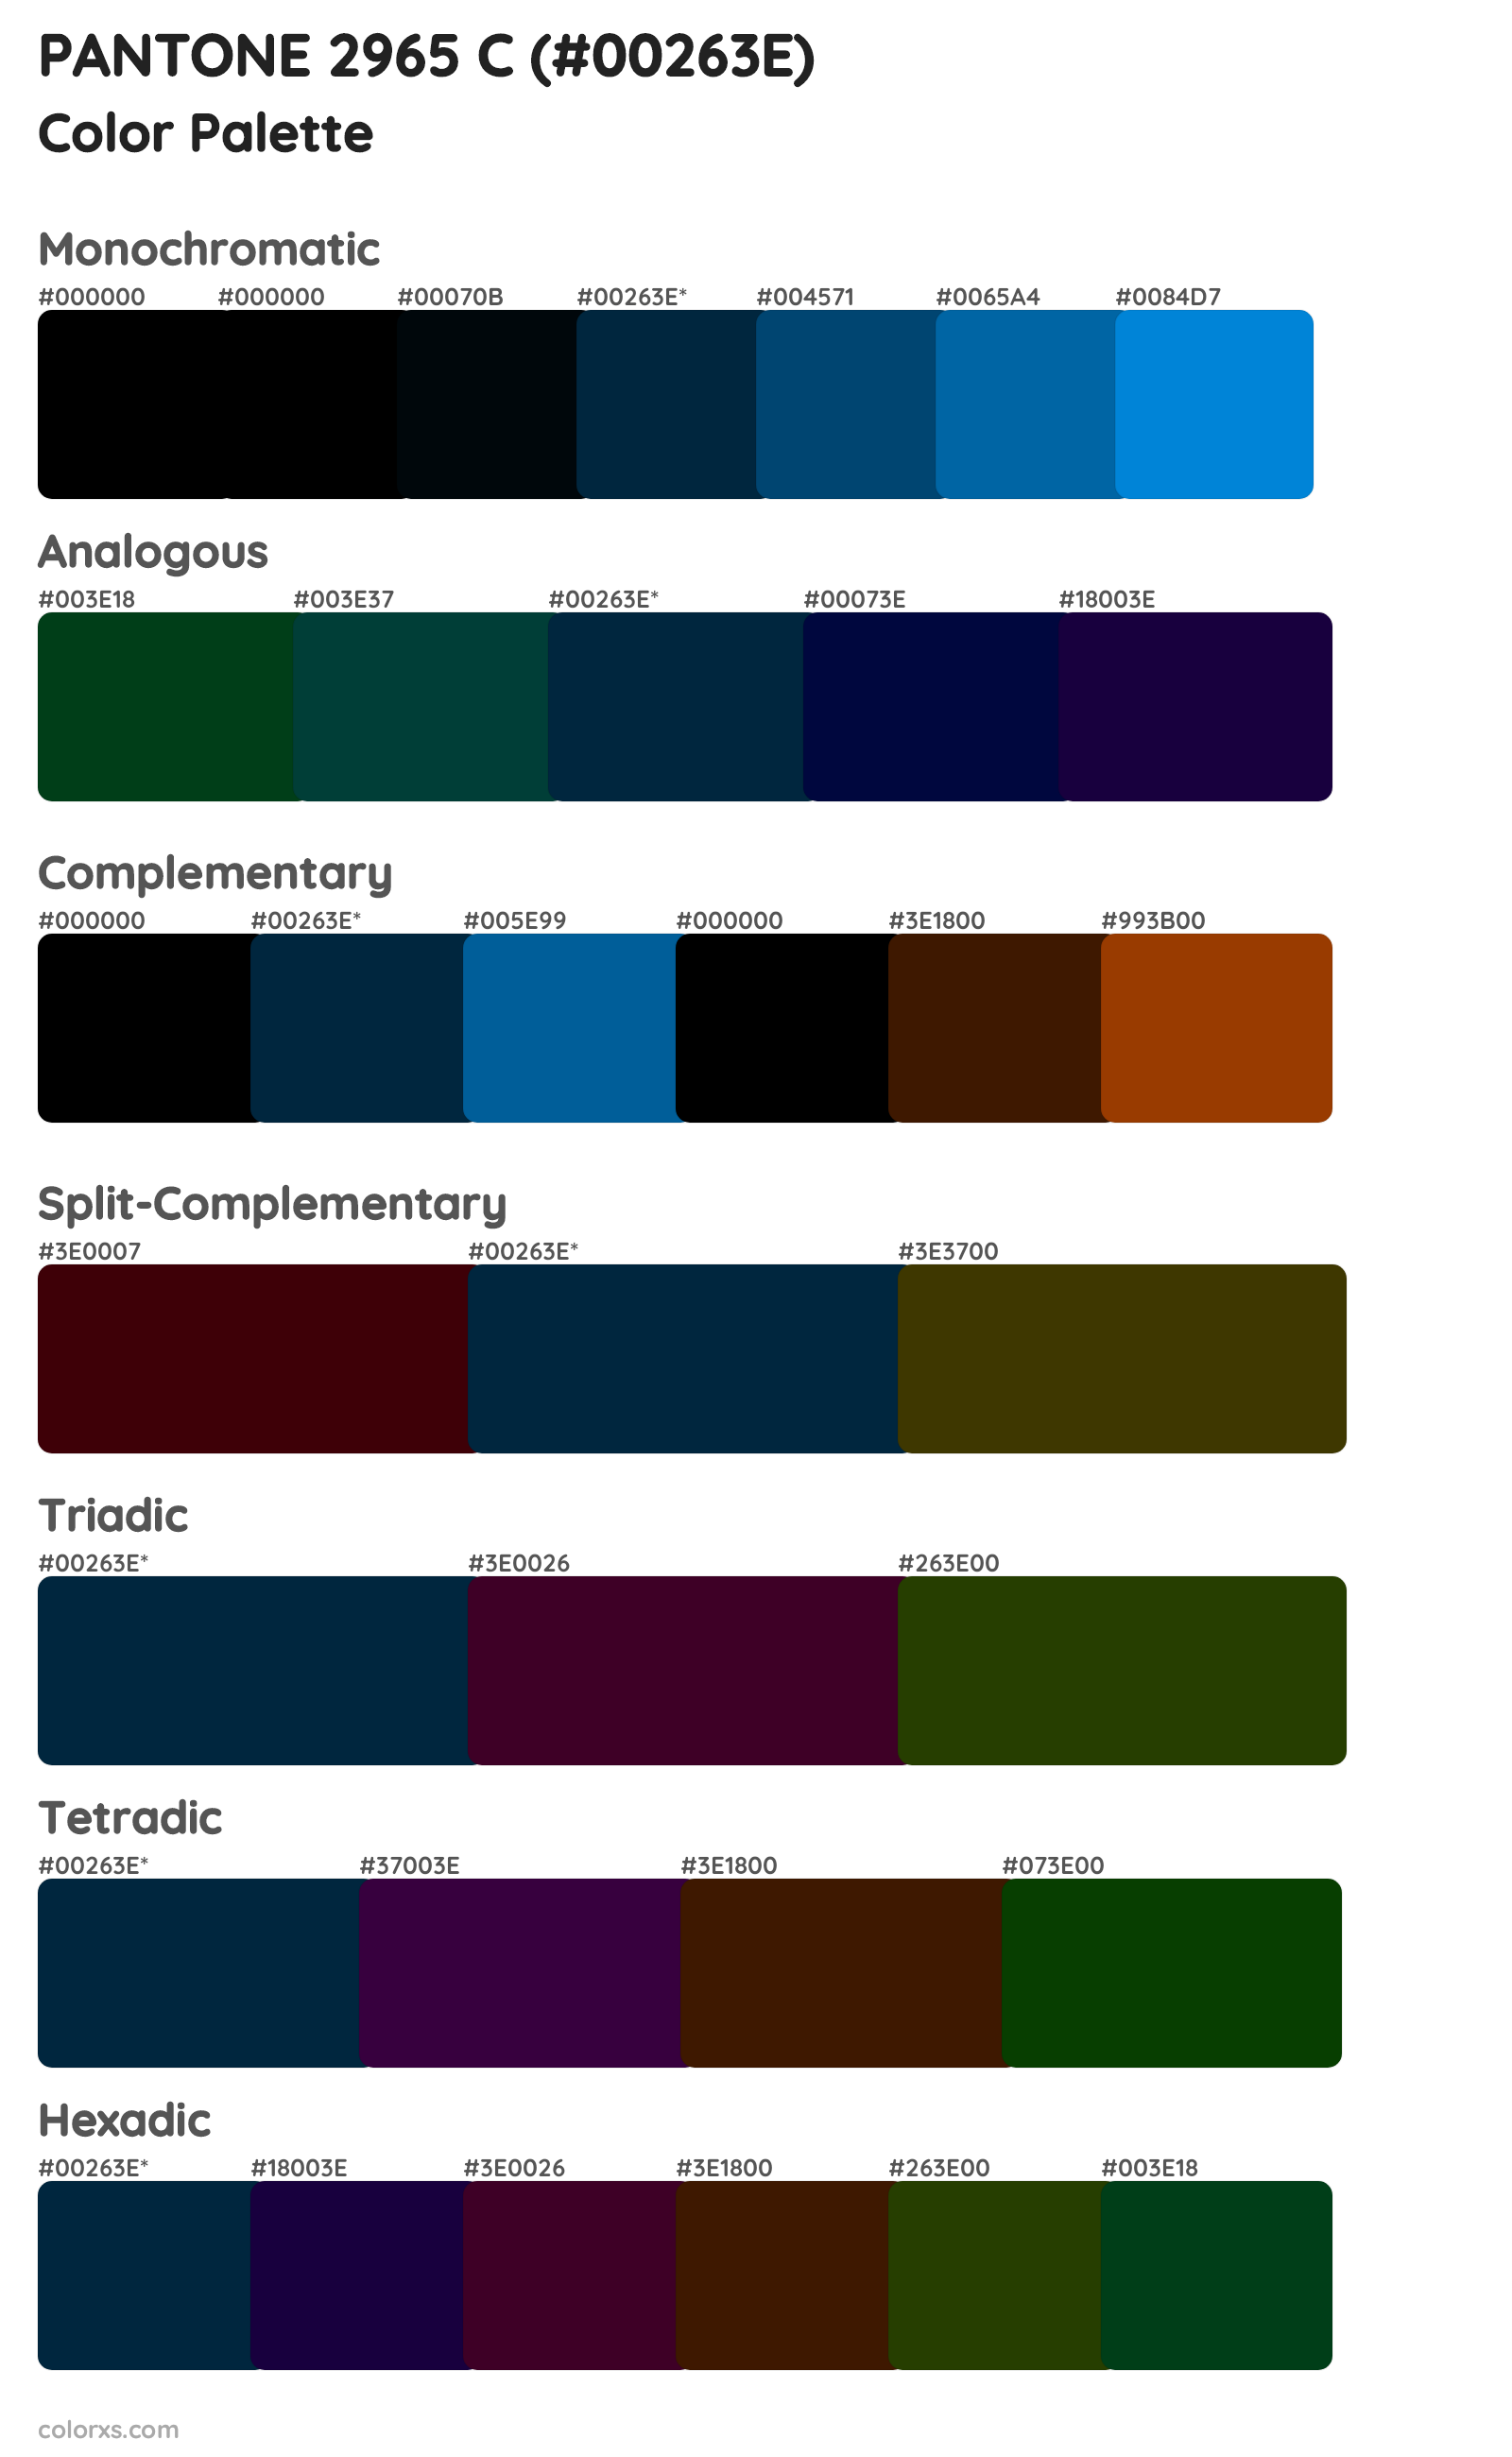 PANTONE 2965 C Color Scheme Palettes